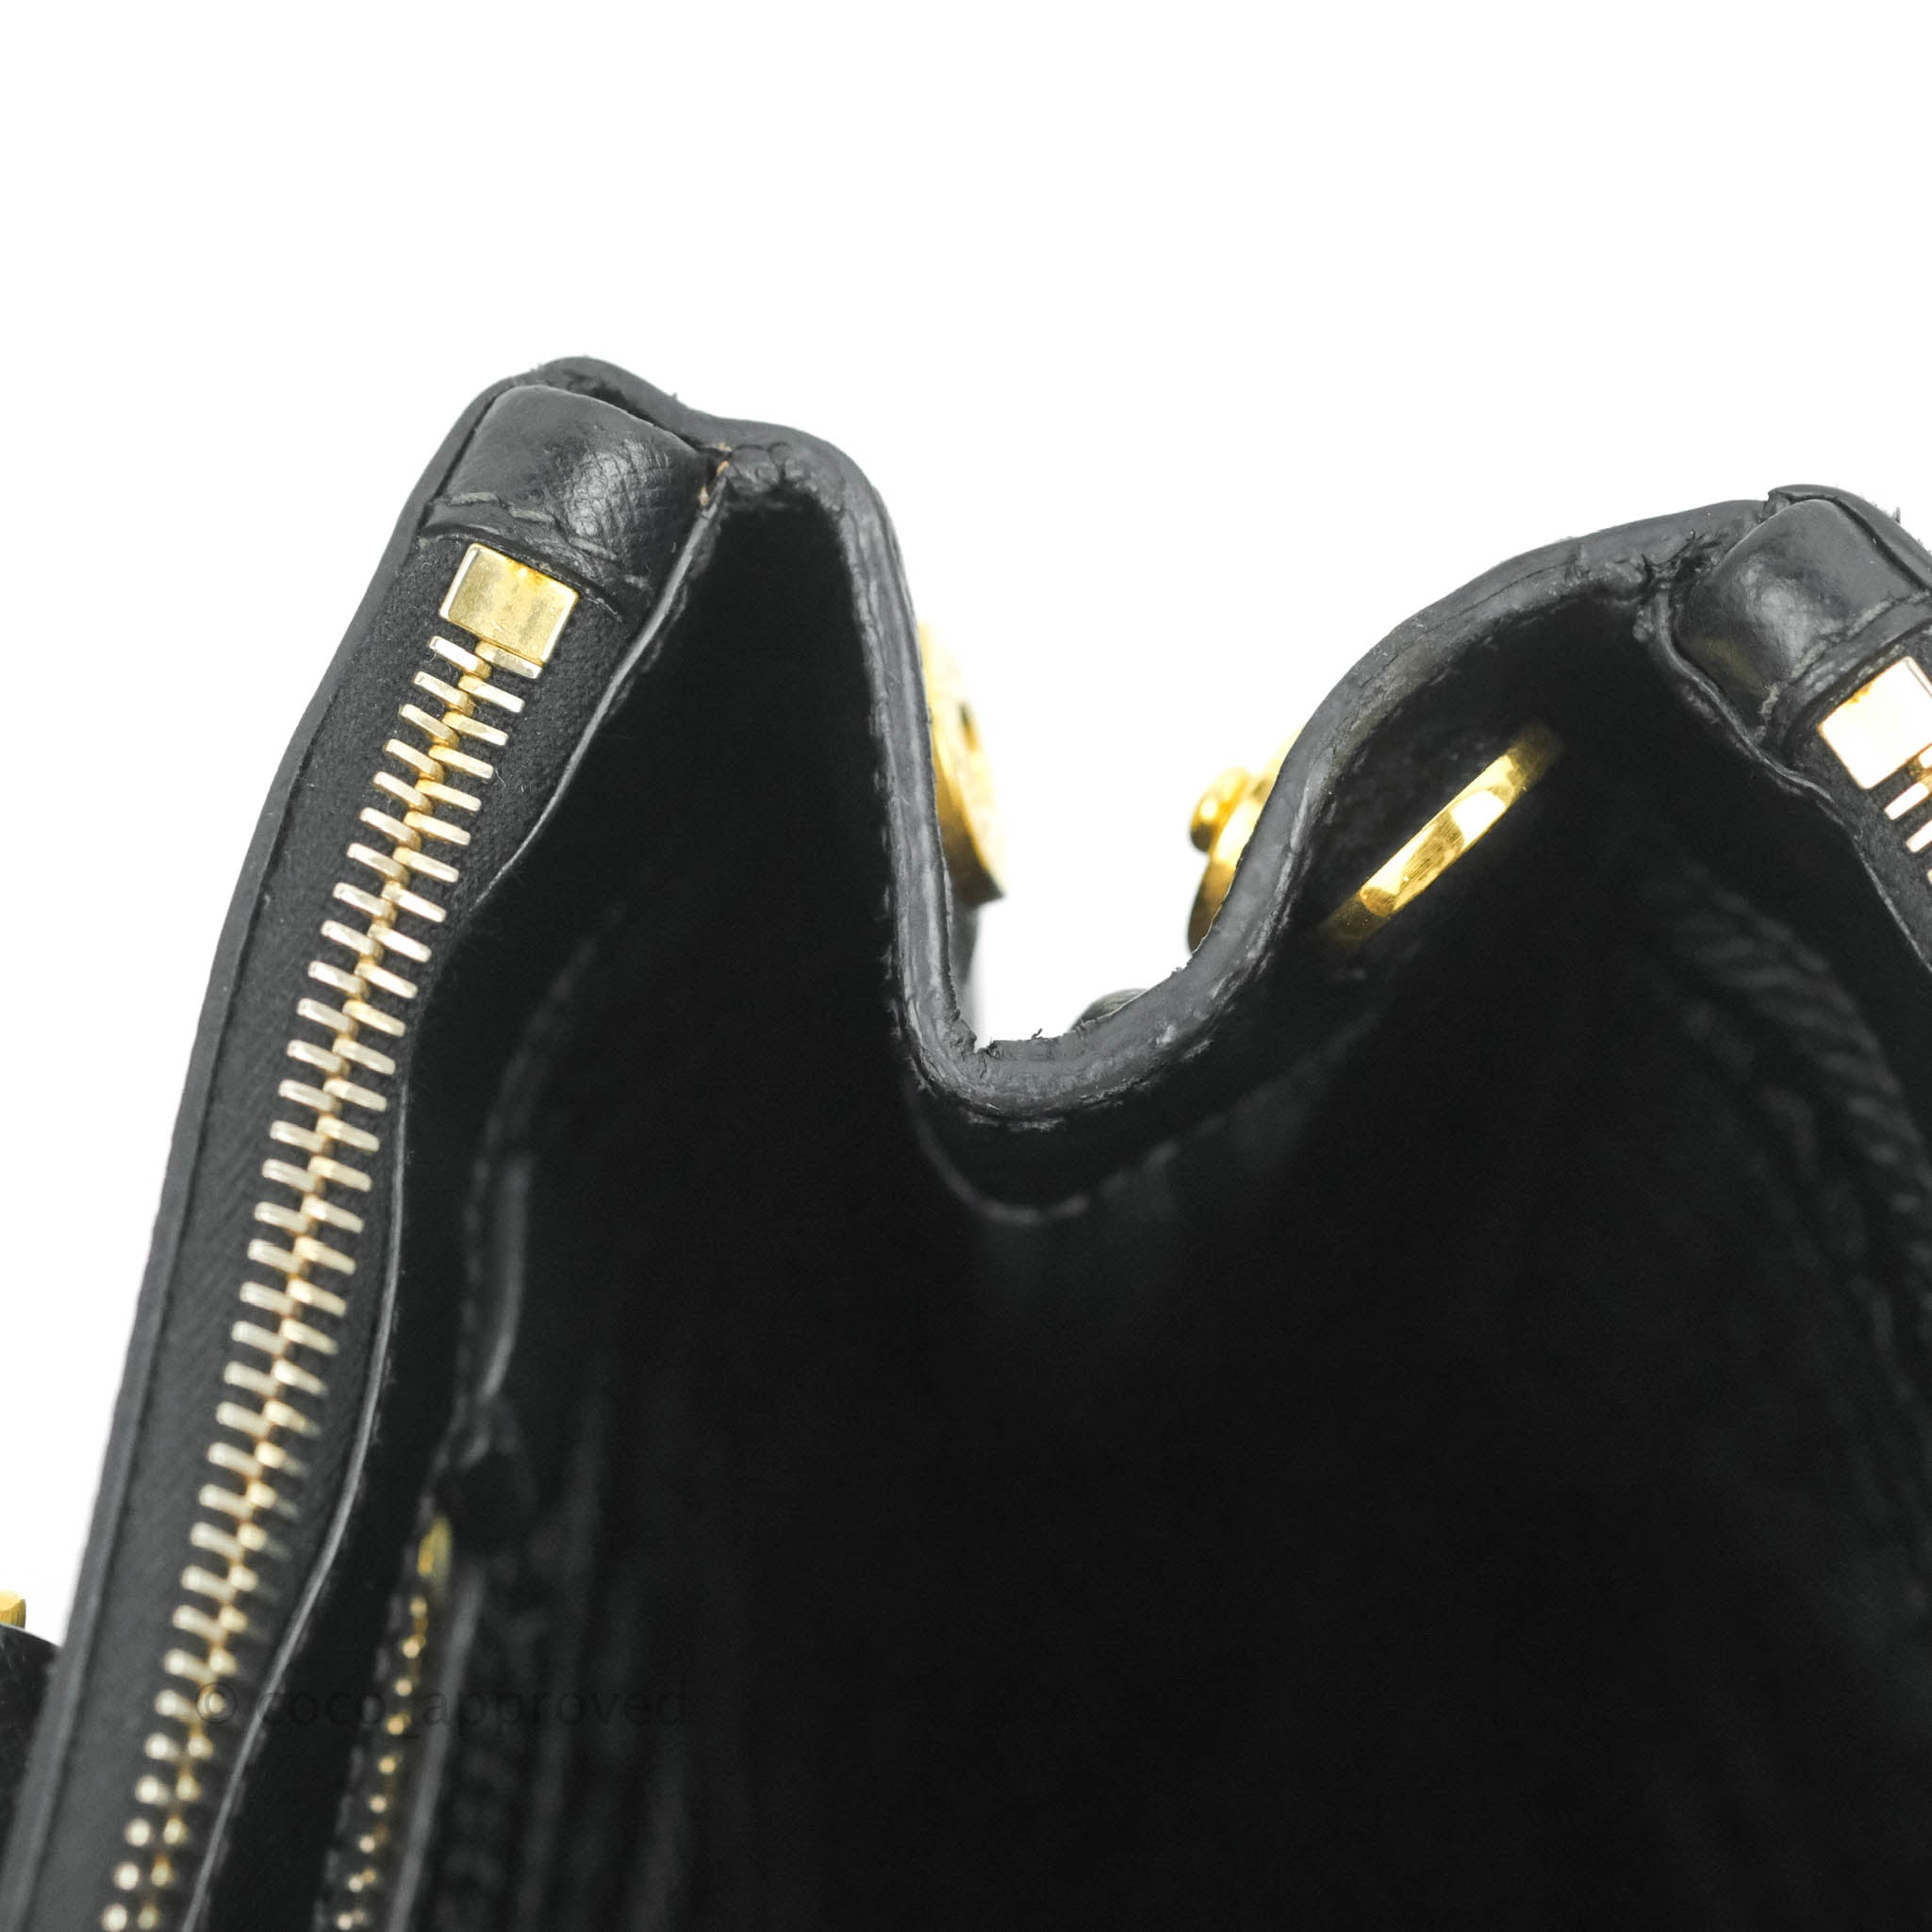 Prada Galleria Saffiano Black Medium Bag - ASL1887 – LuxuryPromise